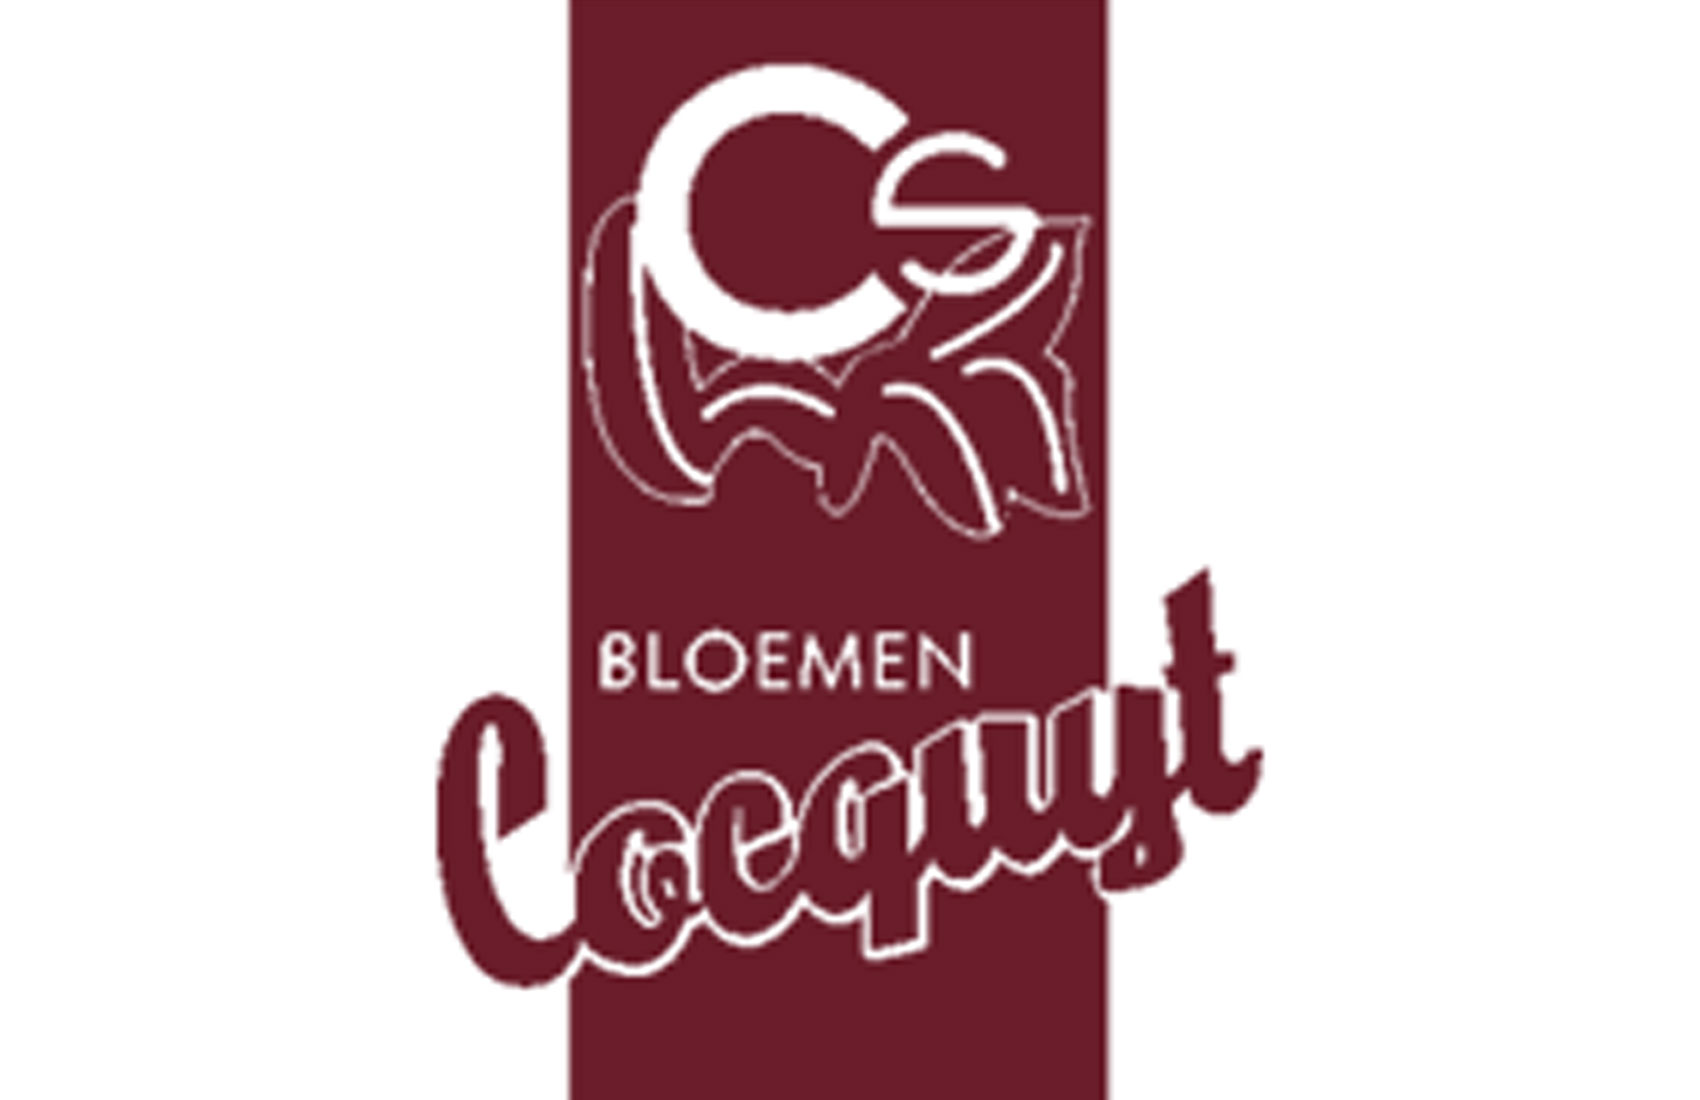 Bloemen Cocquyt